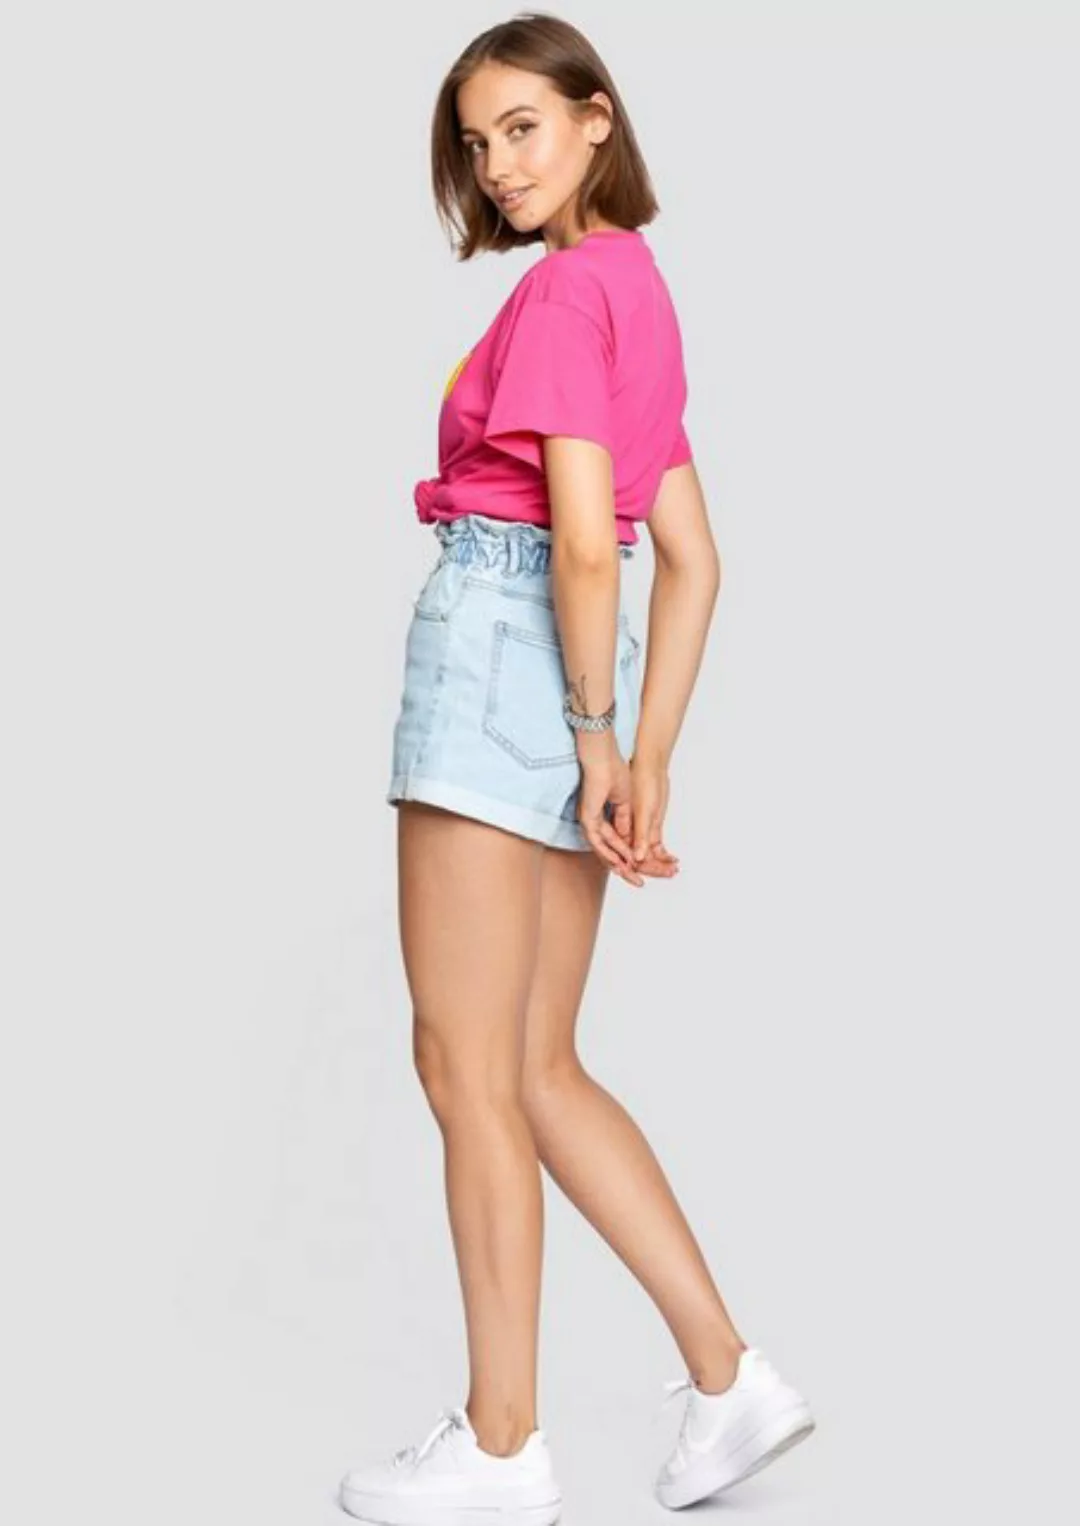 Freshlions T-Shirt T-Shirt Orangen pink M Stickerei günstig online kaufen